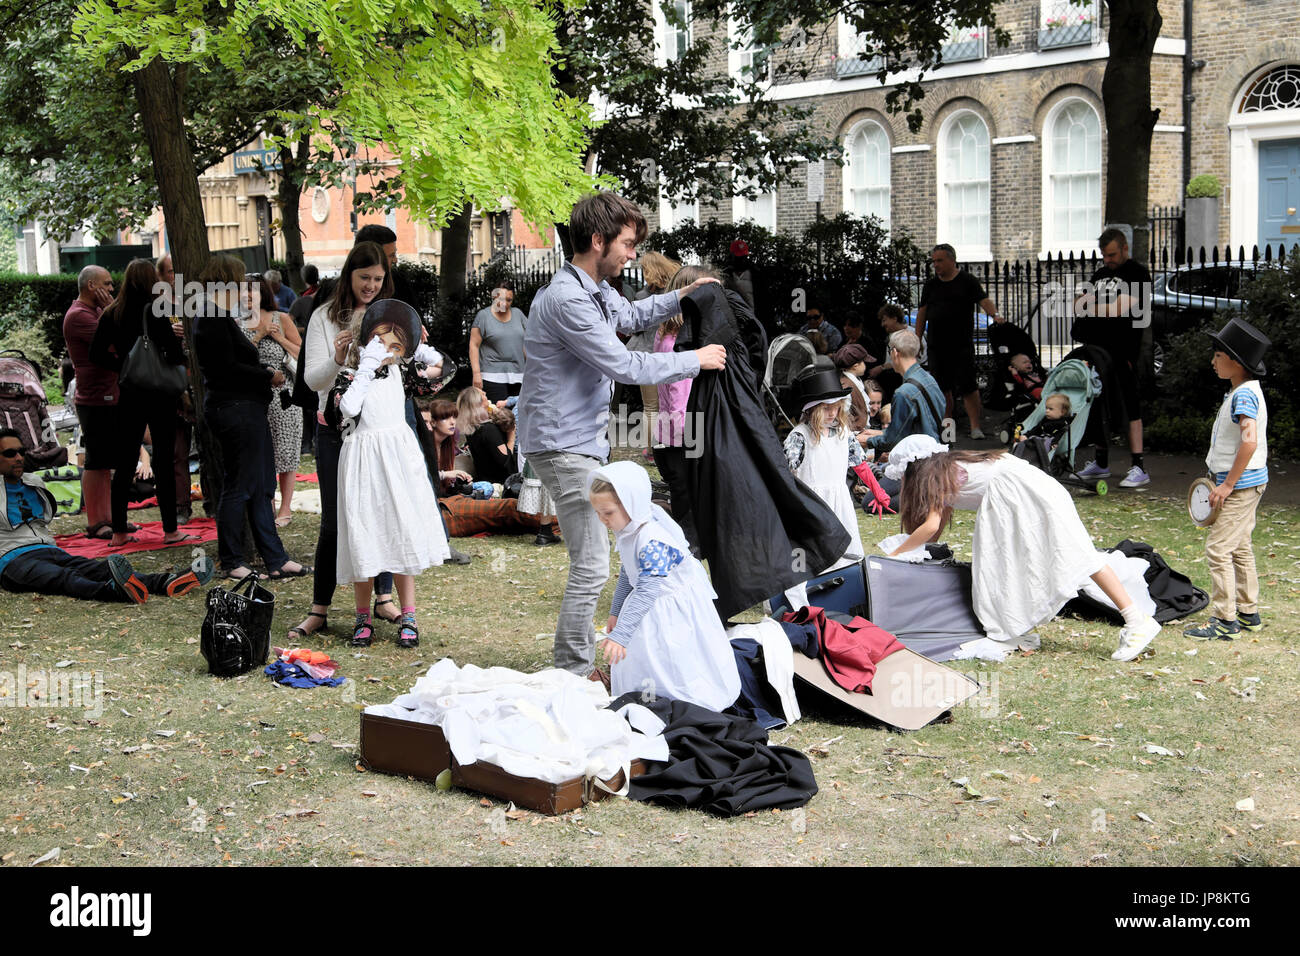 Les familles s'habillent en costumes victoriens au jardin annuel Fete Compton Terrace Gardens près de Upper Street Islington Londres N1 UK KATHY DEWITT Banque D'Images